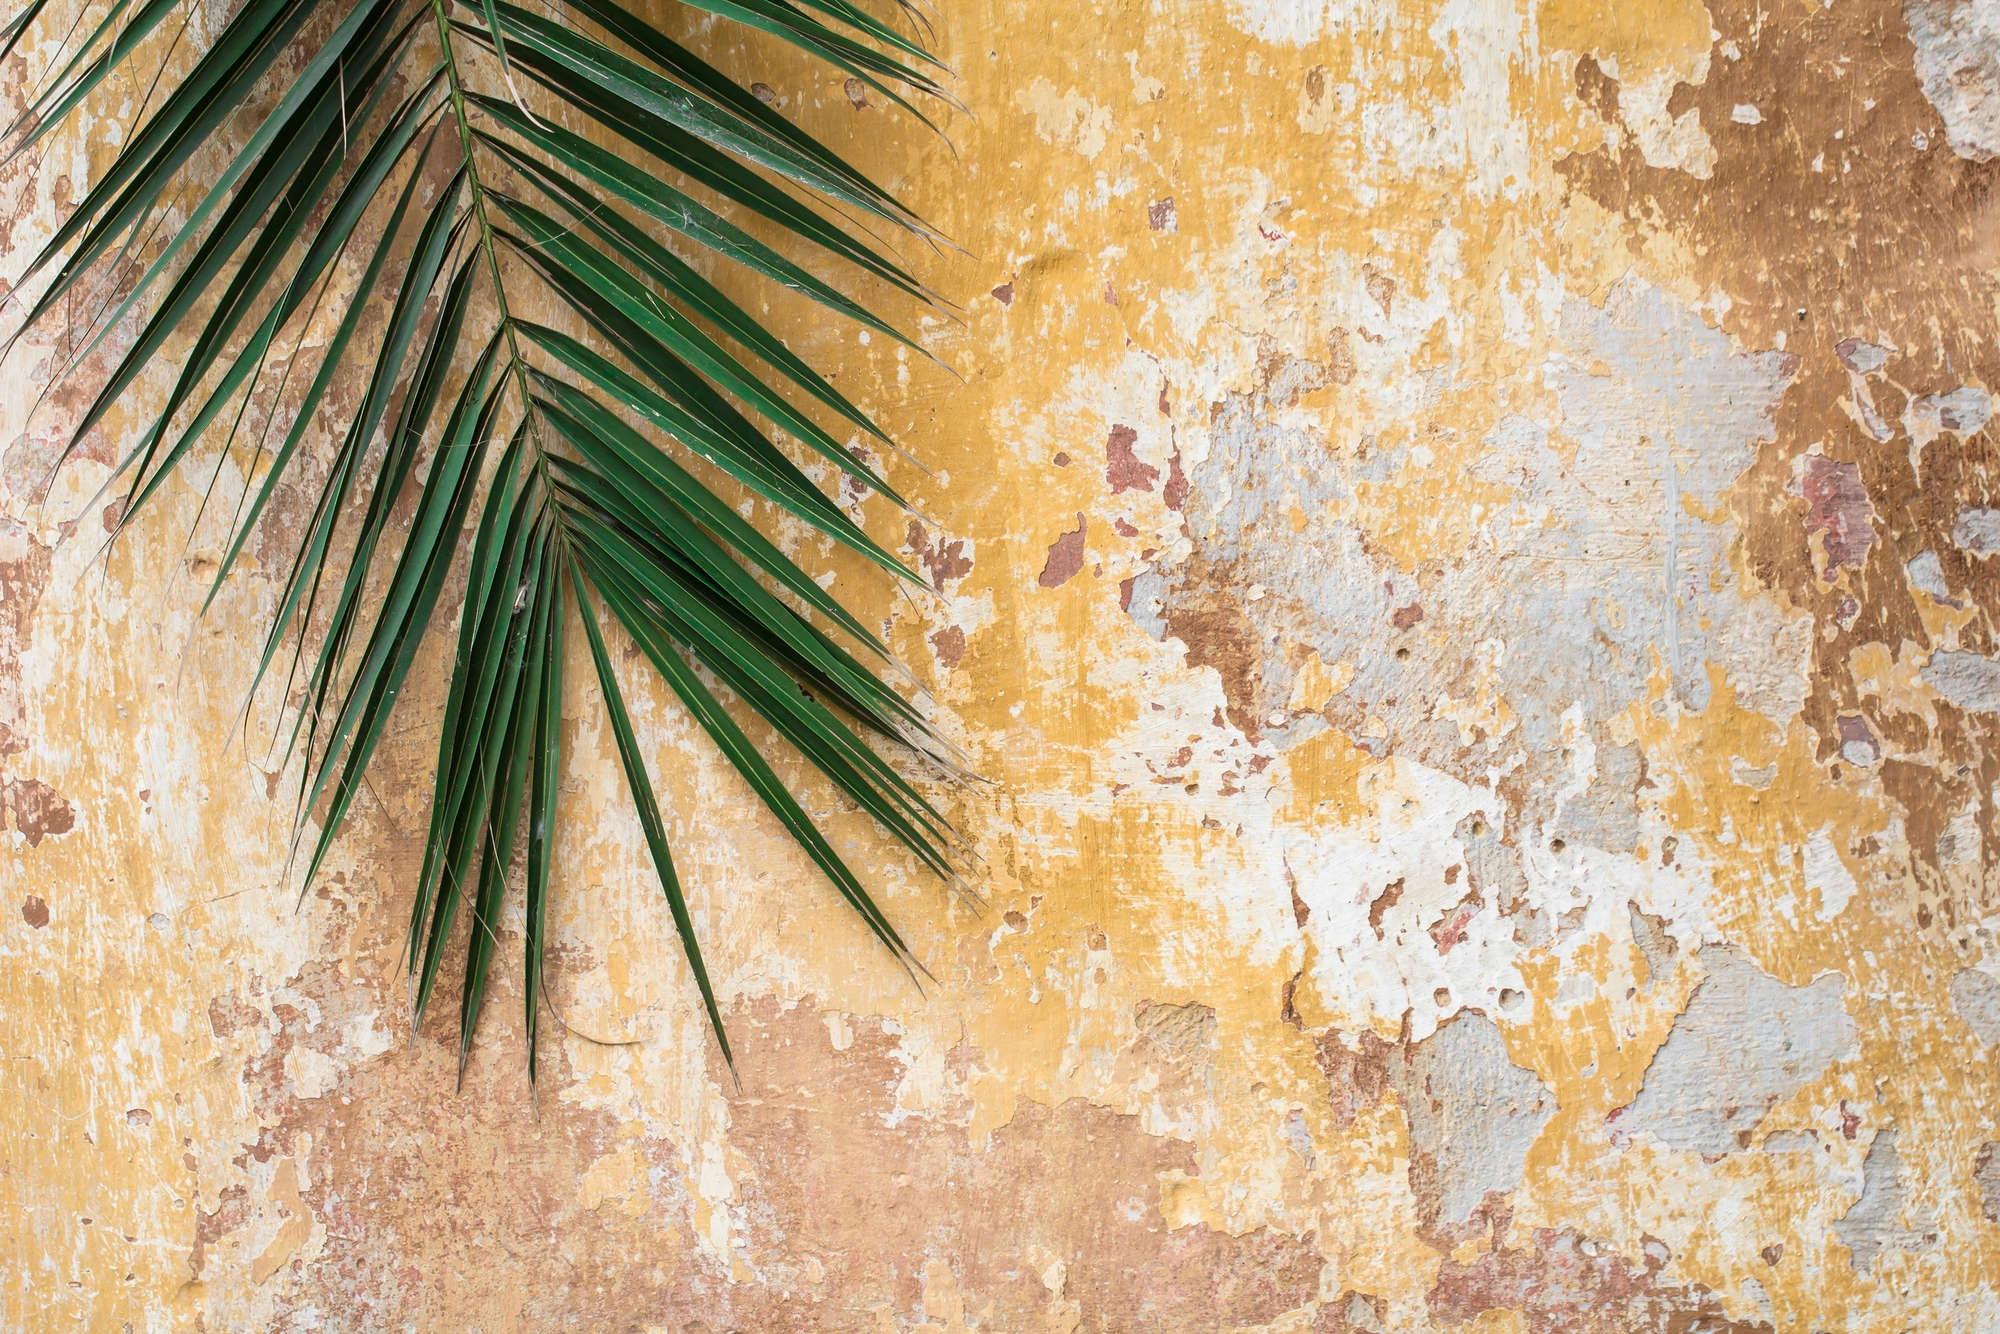             Natur Fototapete Palmenblatt vor Steinmauer auf Perlmutt Glattvlies
        